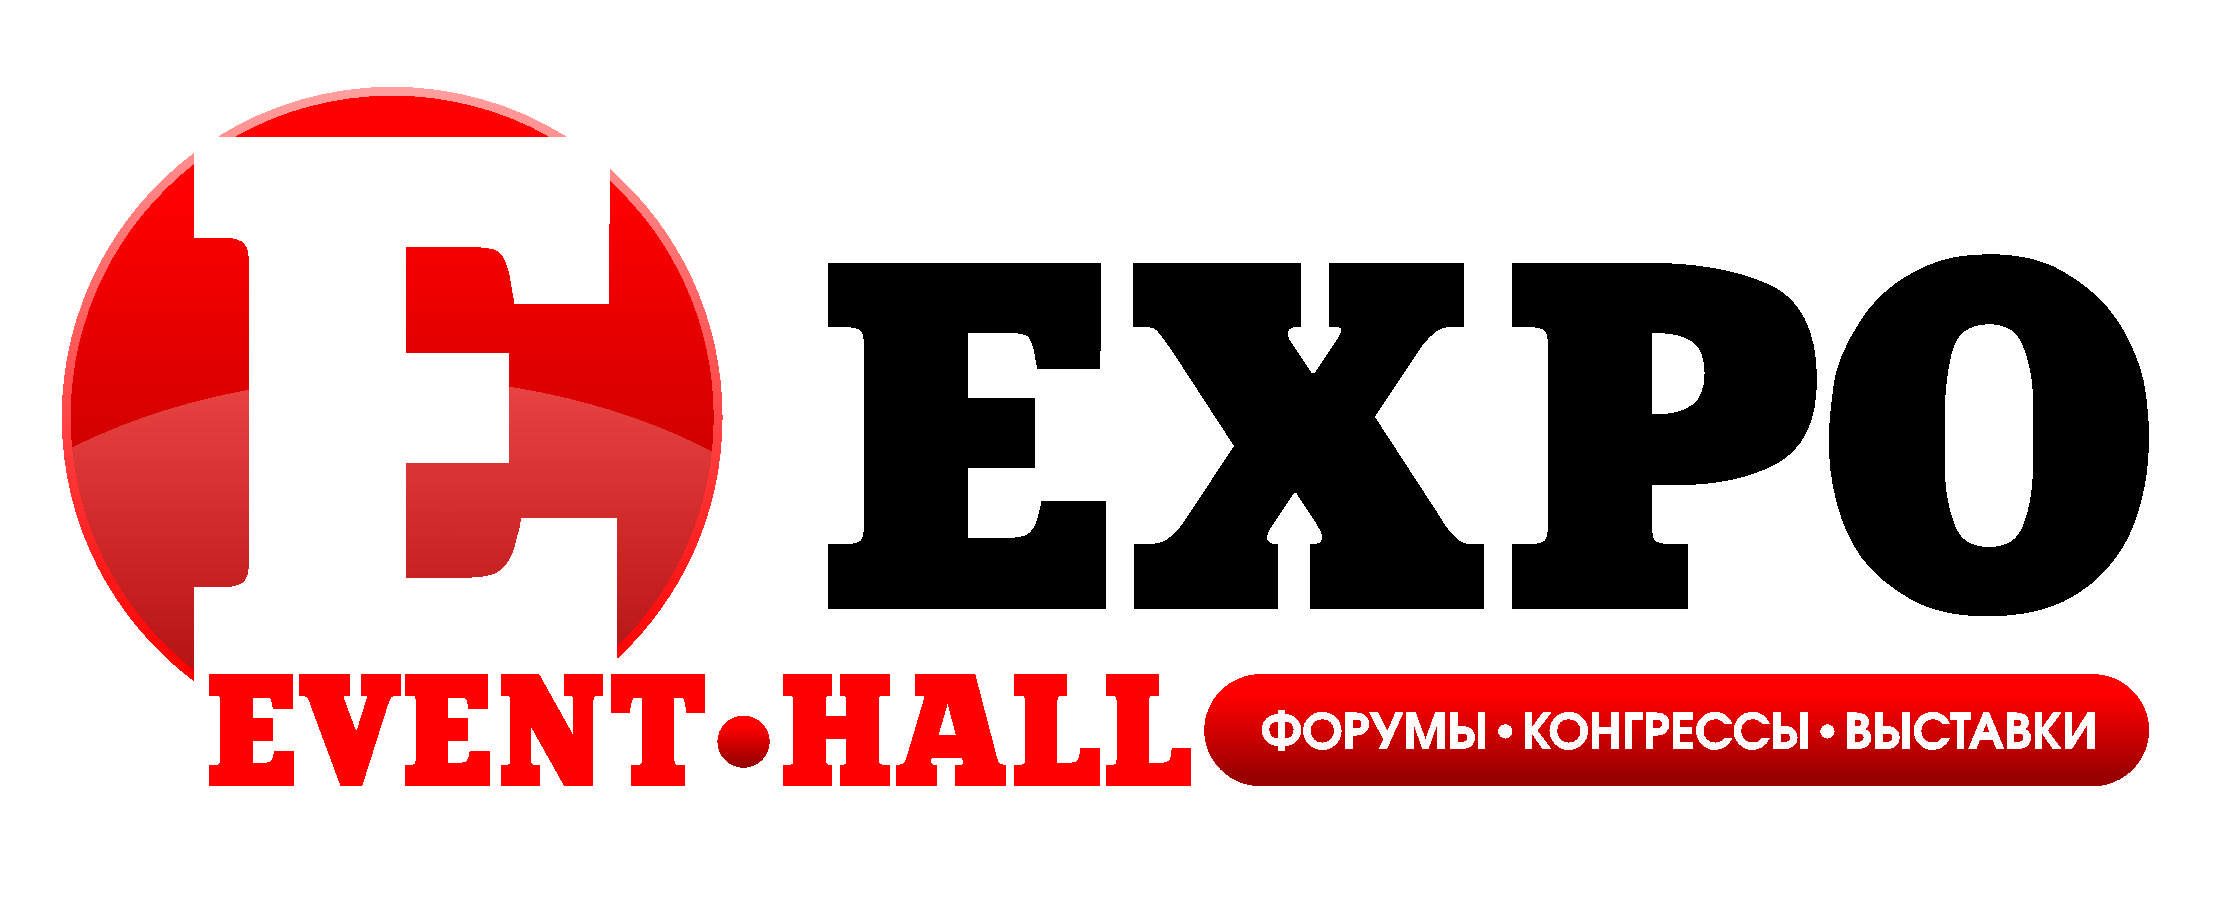 Логотип Expo Event Hall